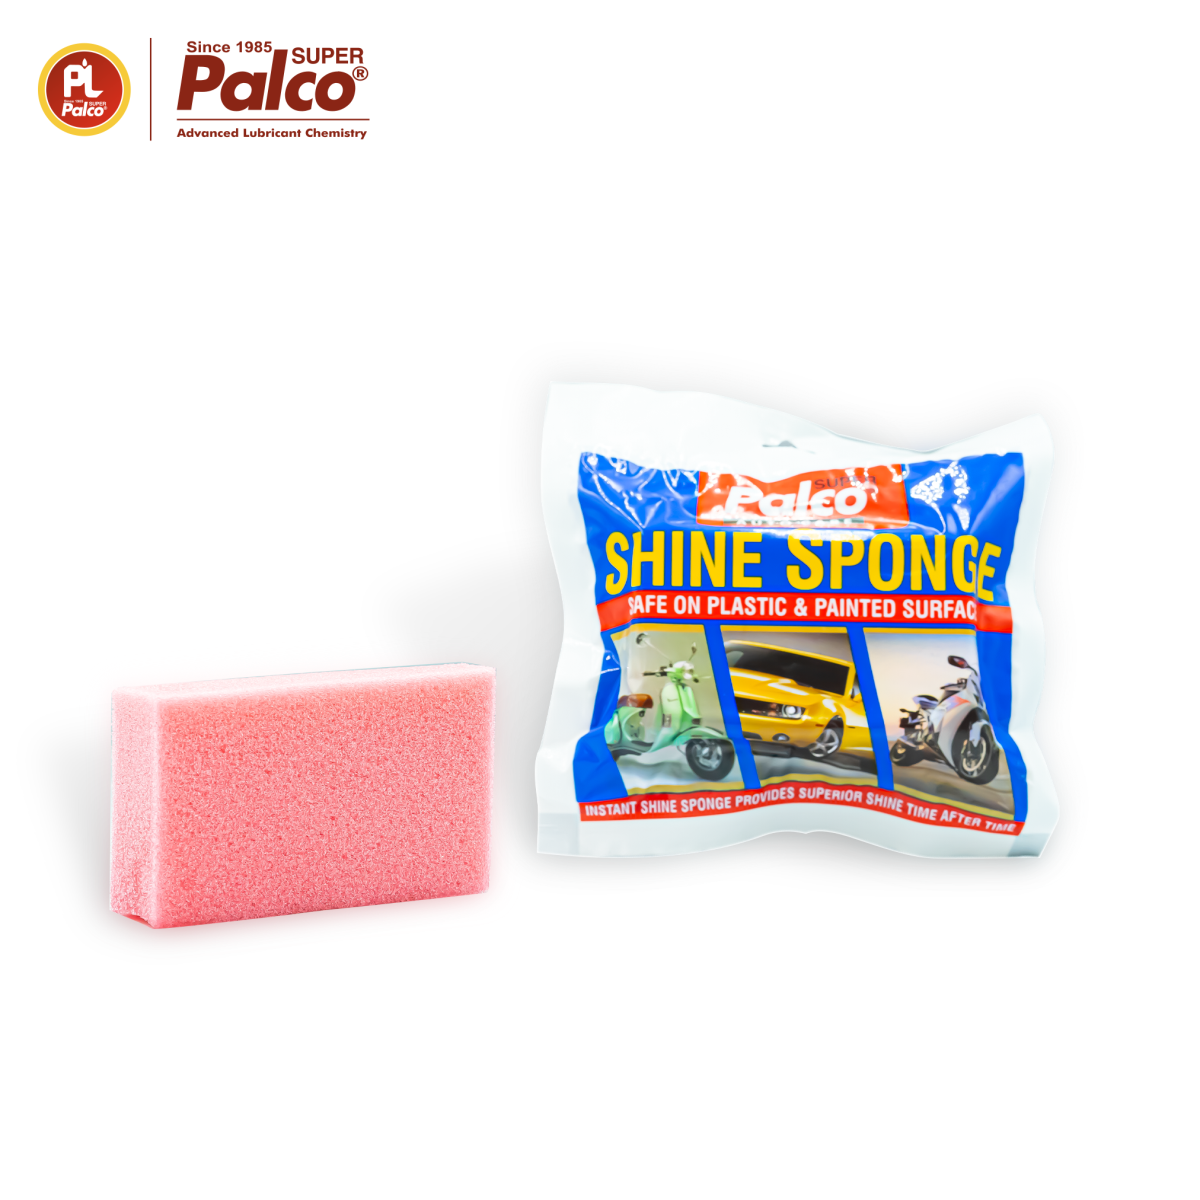 Mút bọt biển chứa sáp đánh bóng xe Palco Shine Sponge